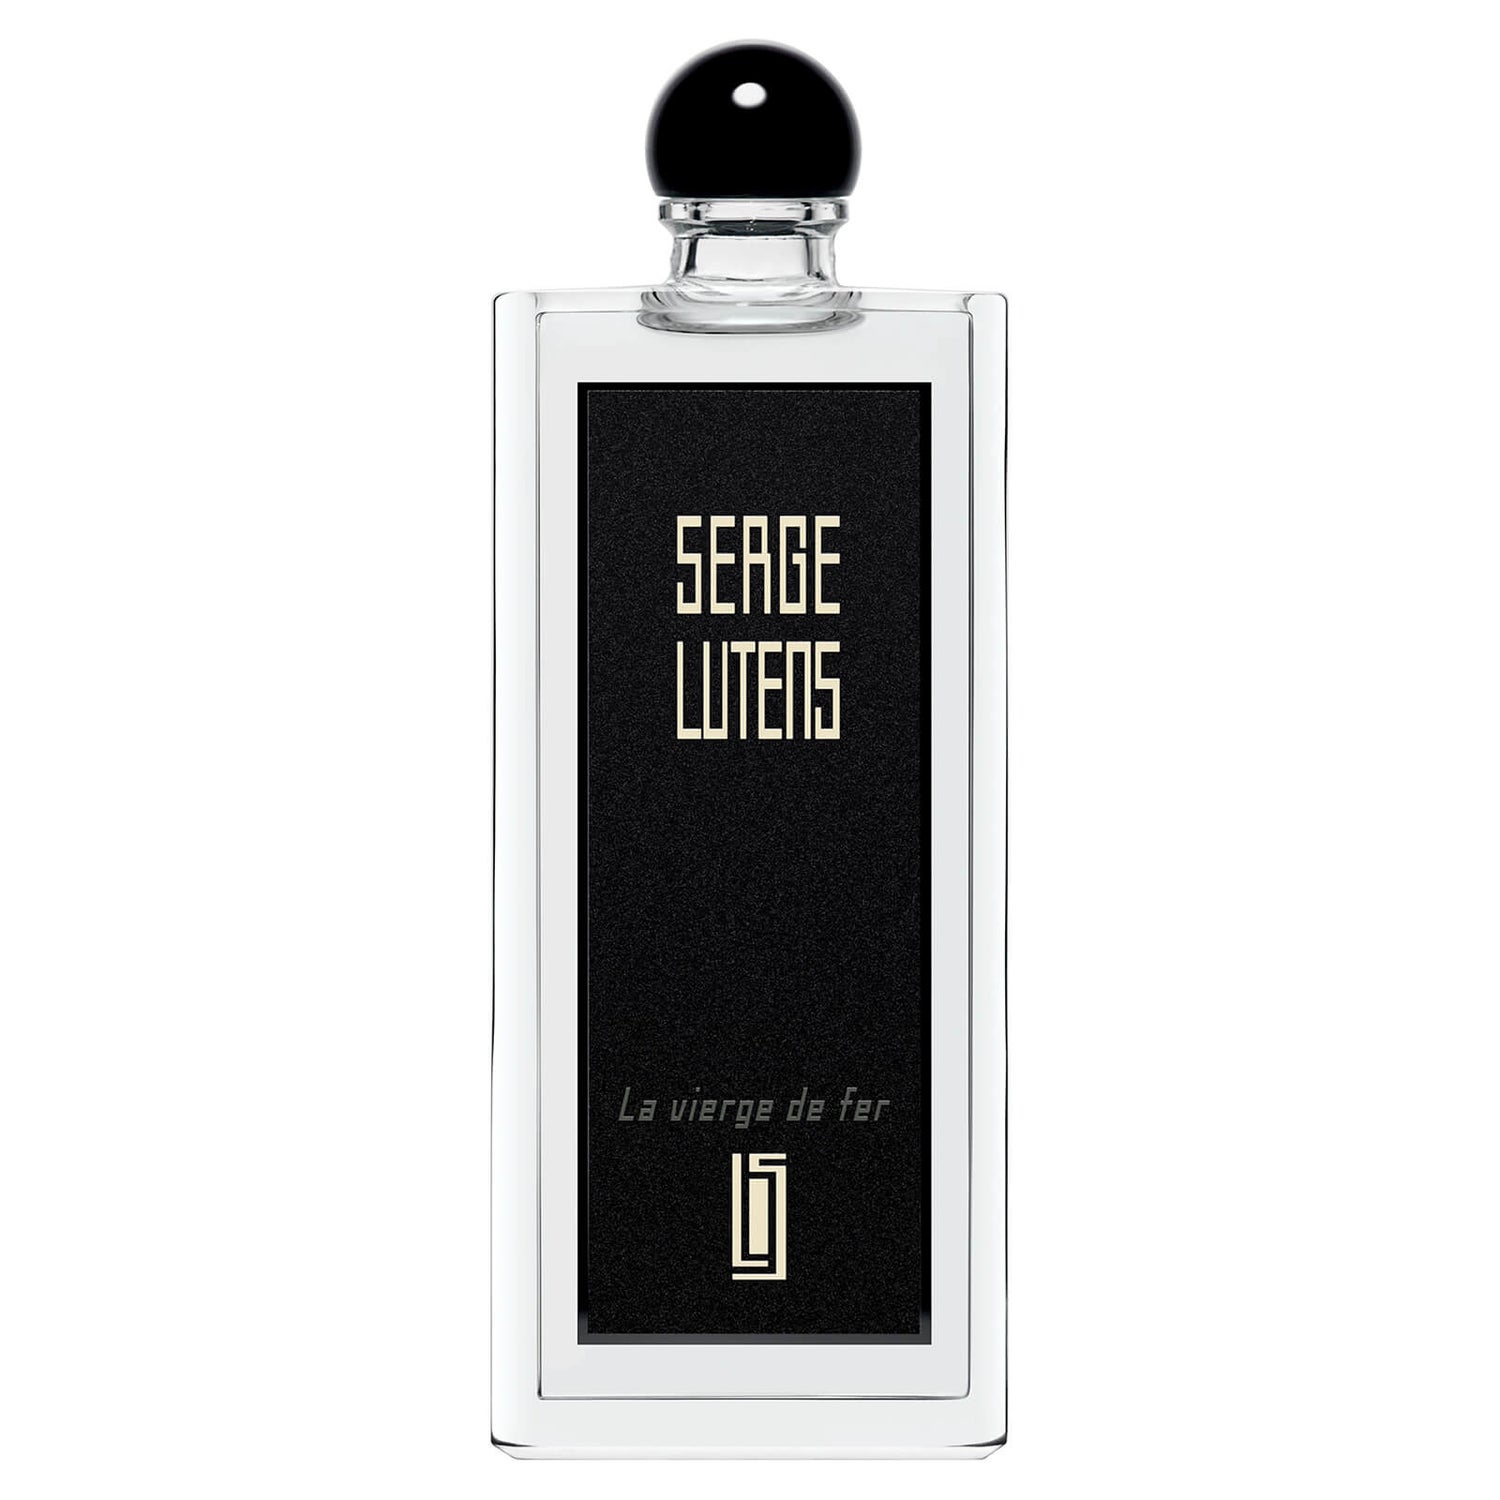 Serge Lutens La Vierge de fer Eau de Parfum - 50ml